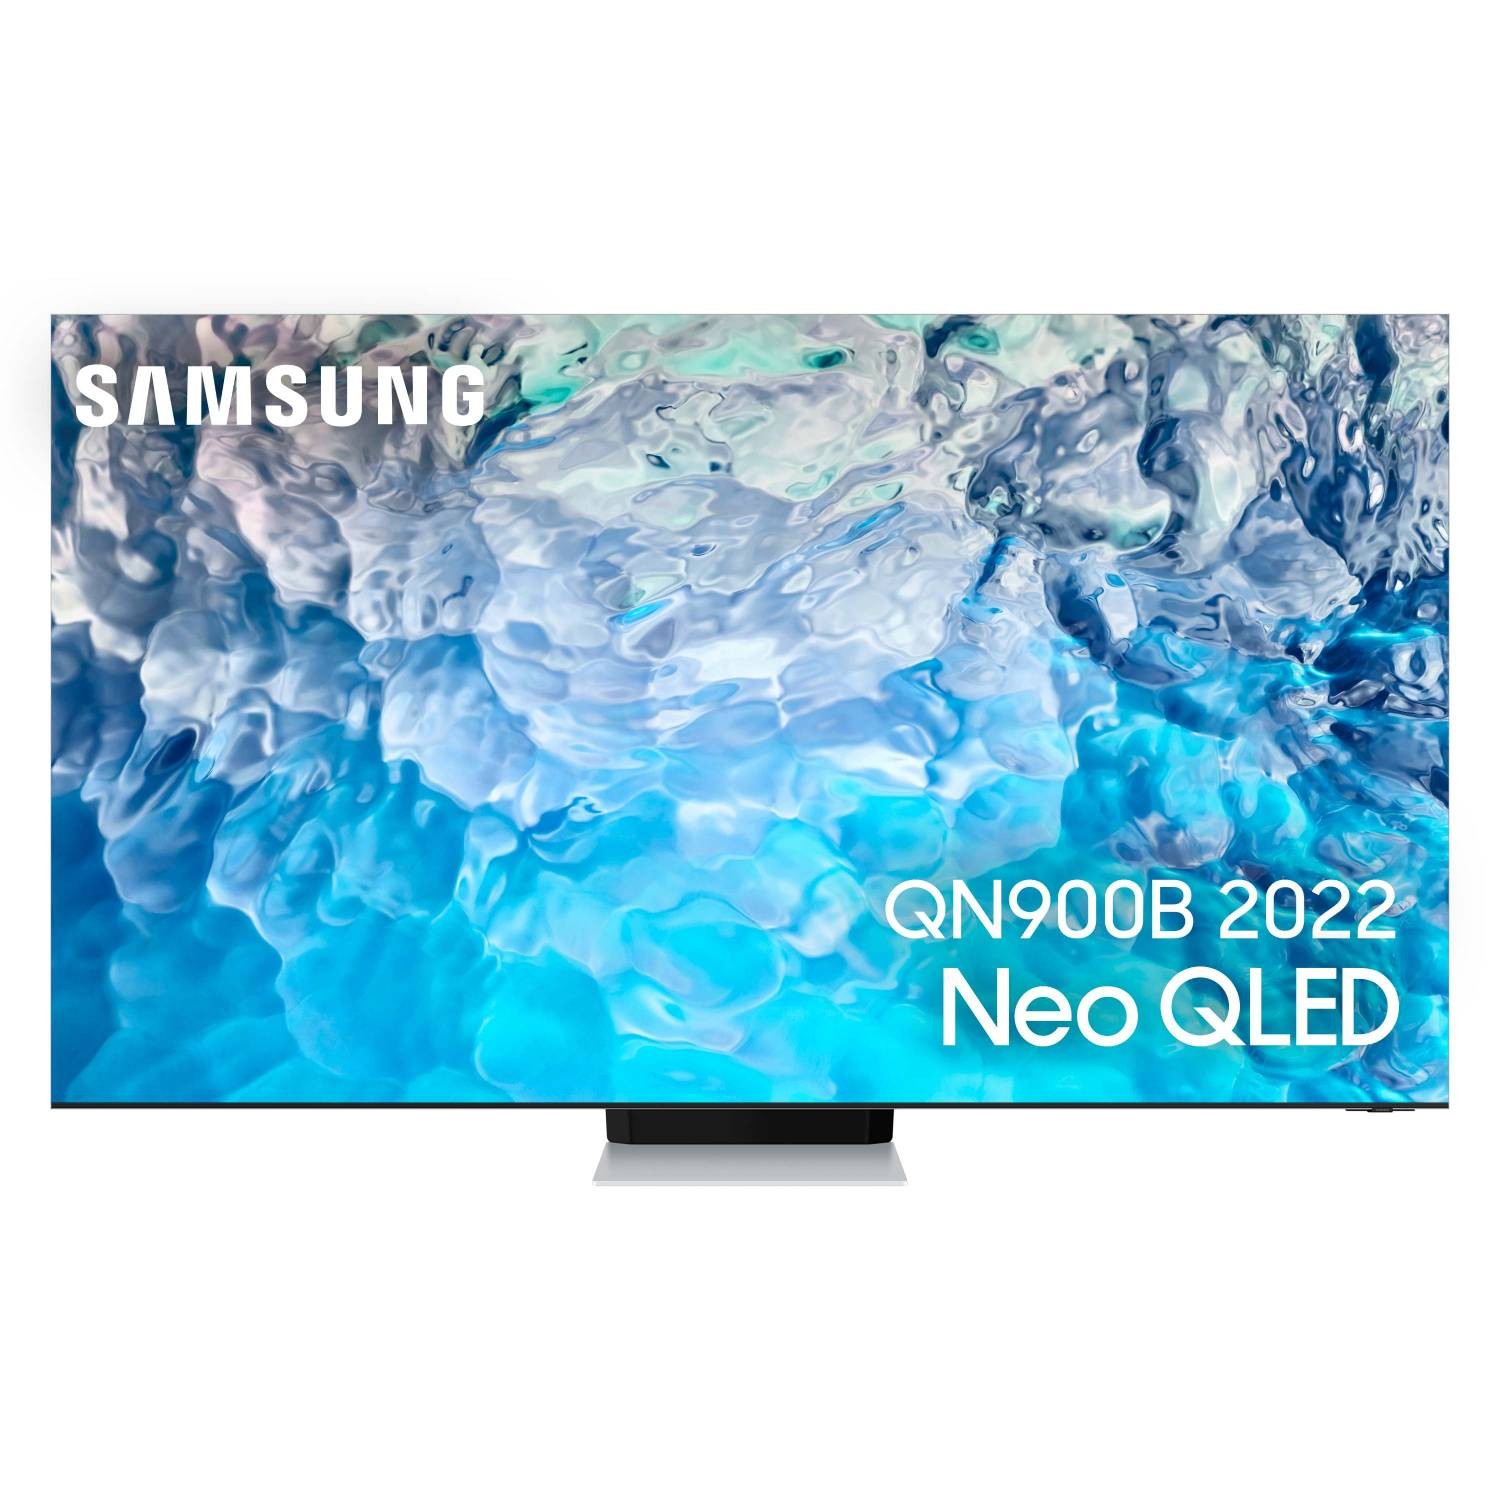 SAMSUNG TV Neo QLED 8K 214 cm TV Neo QLED QE85QN900B 8K 214 cm